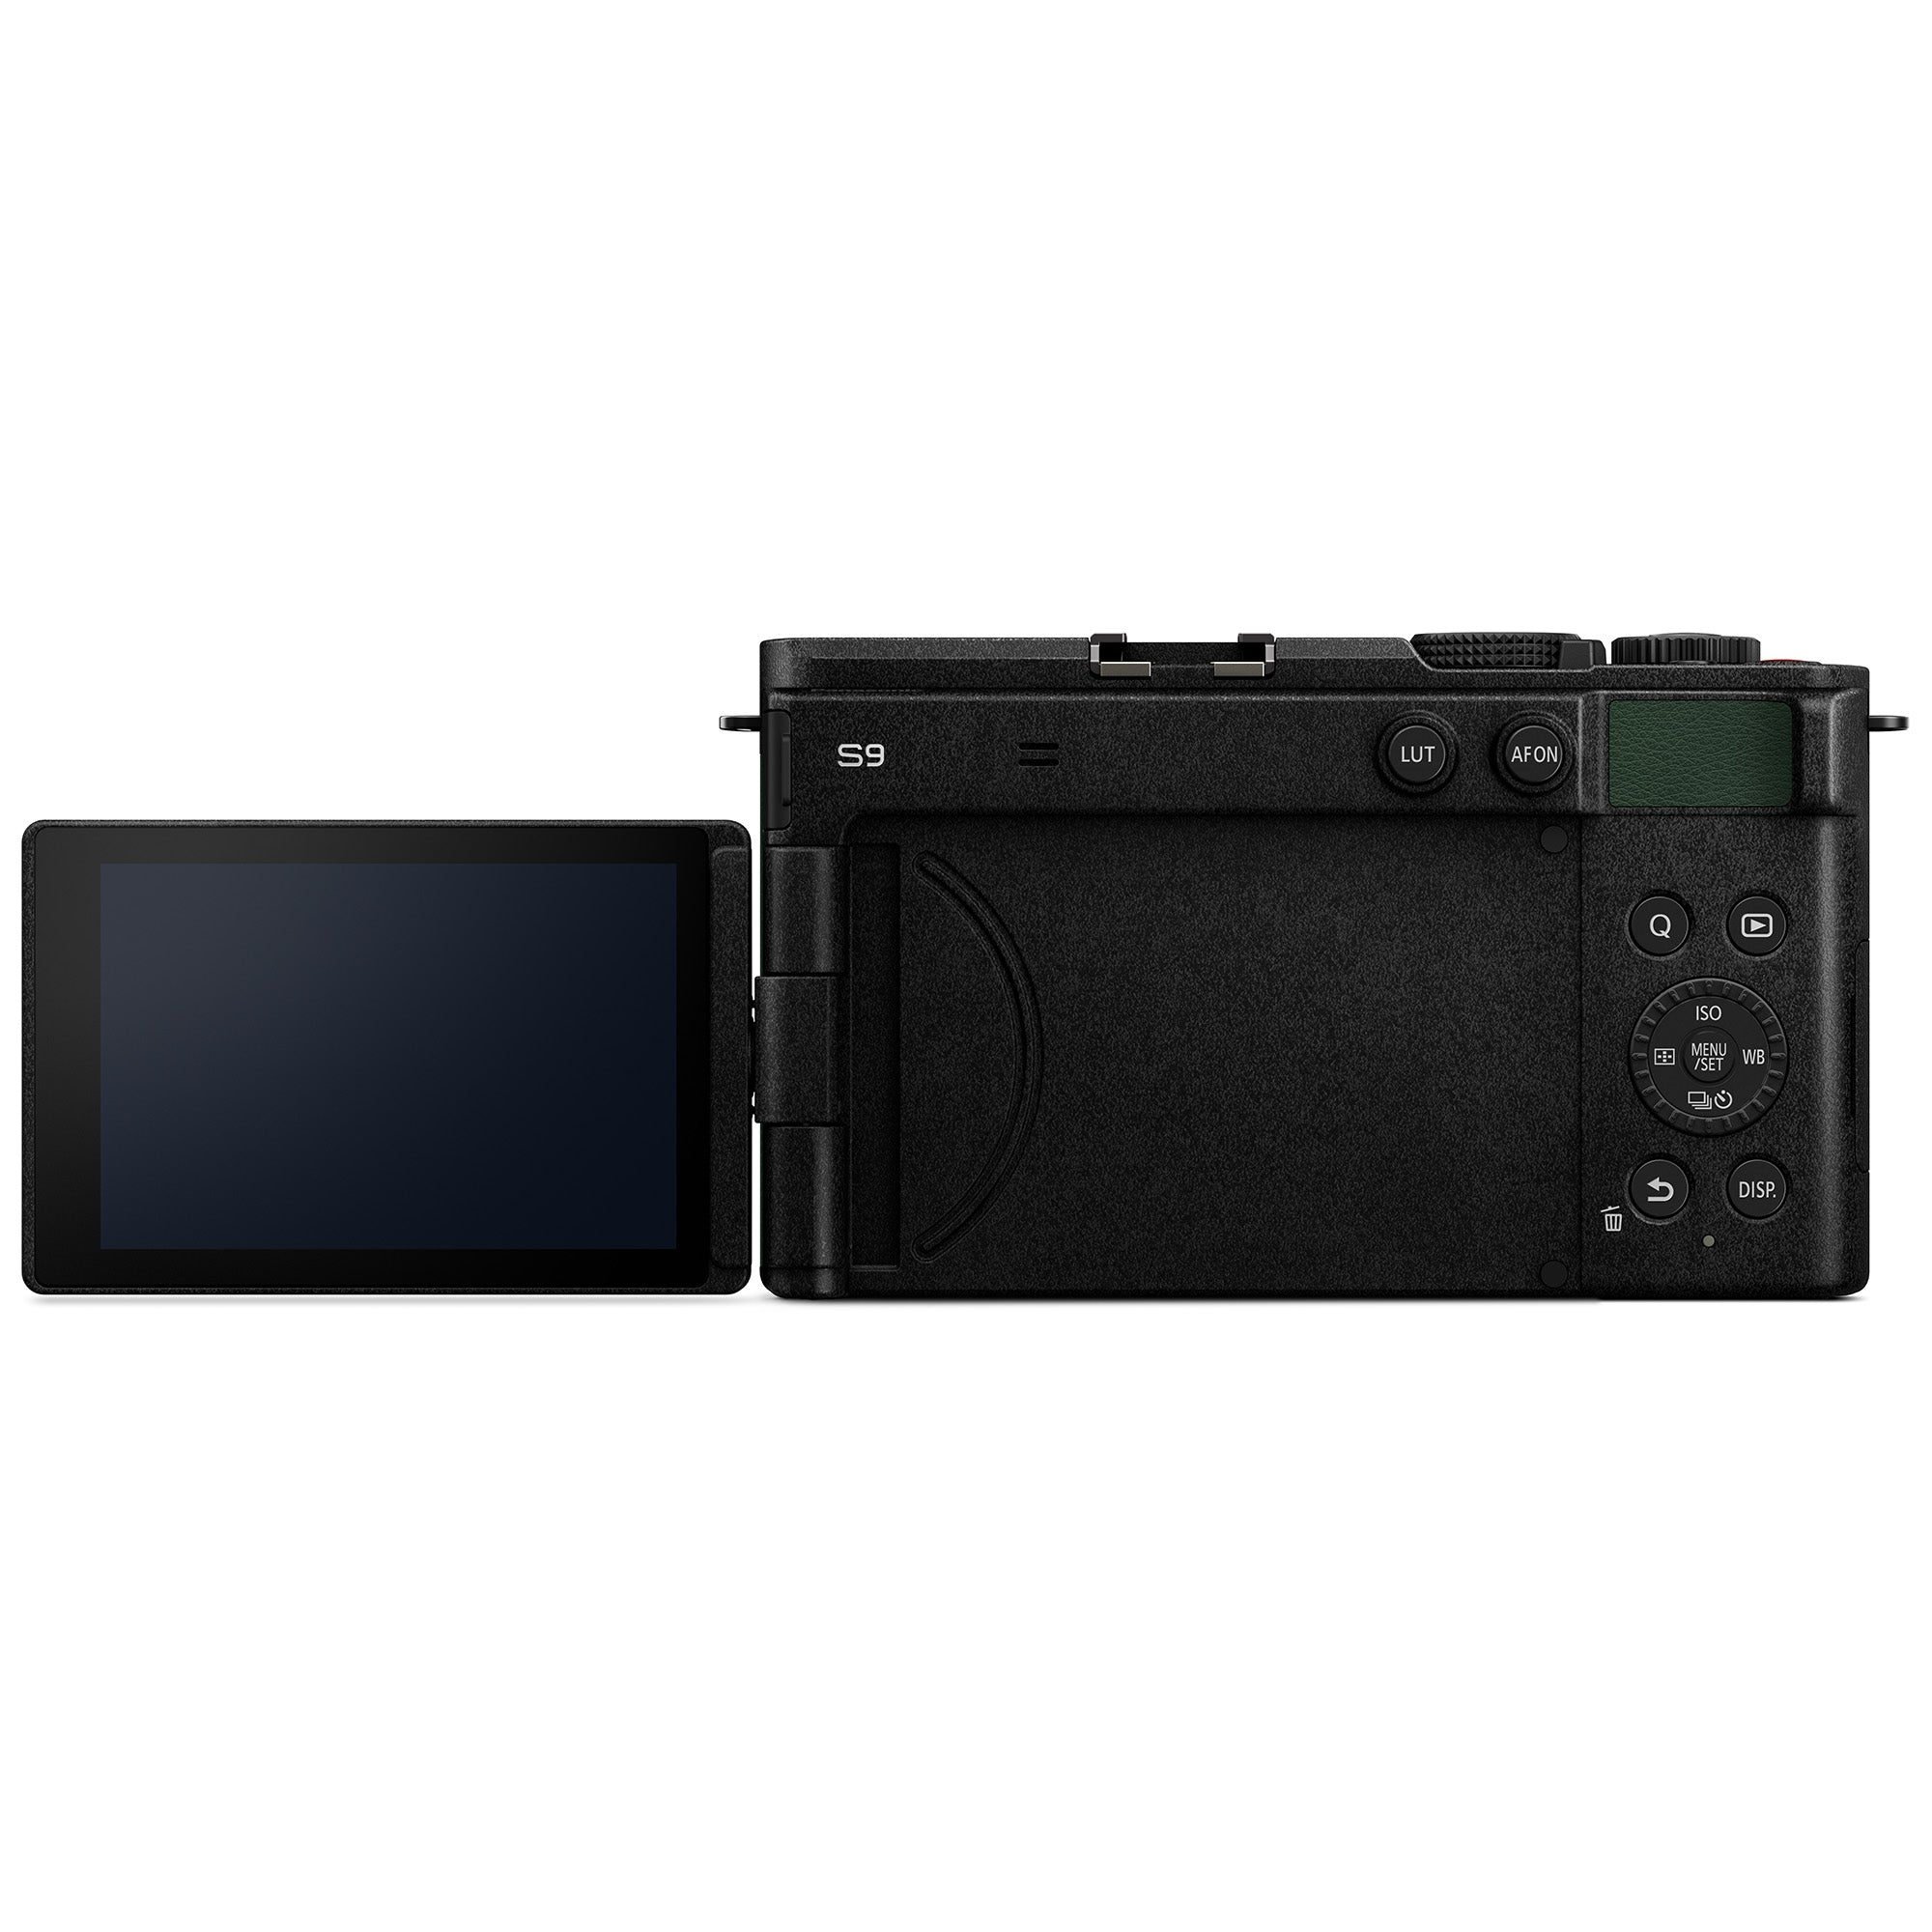 S9 Full Frame Mirrorless Camera + 20-60mm F3.5-5.6 Lens